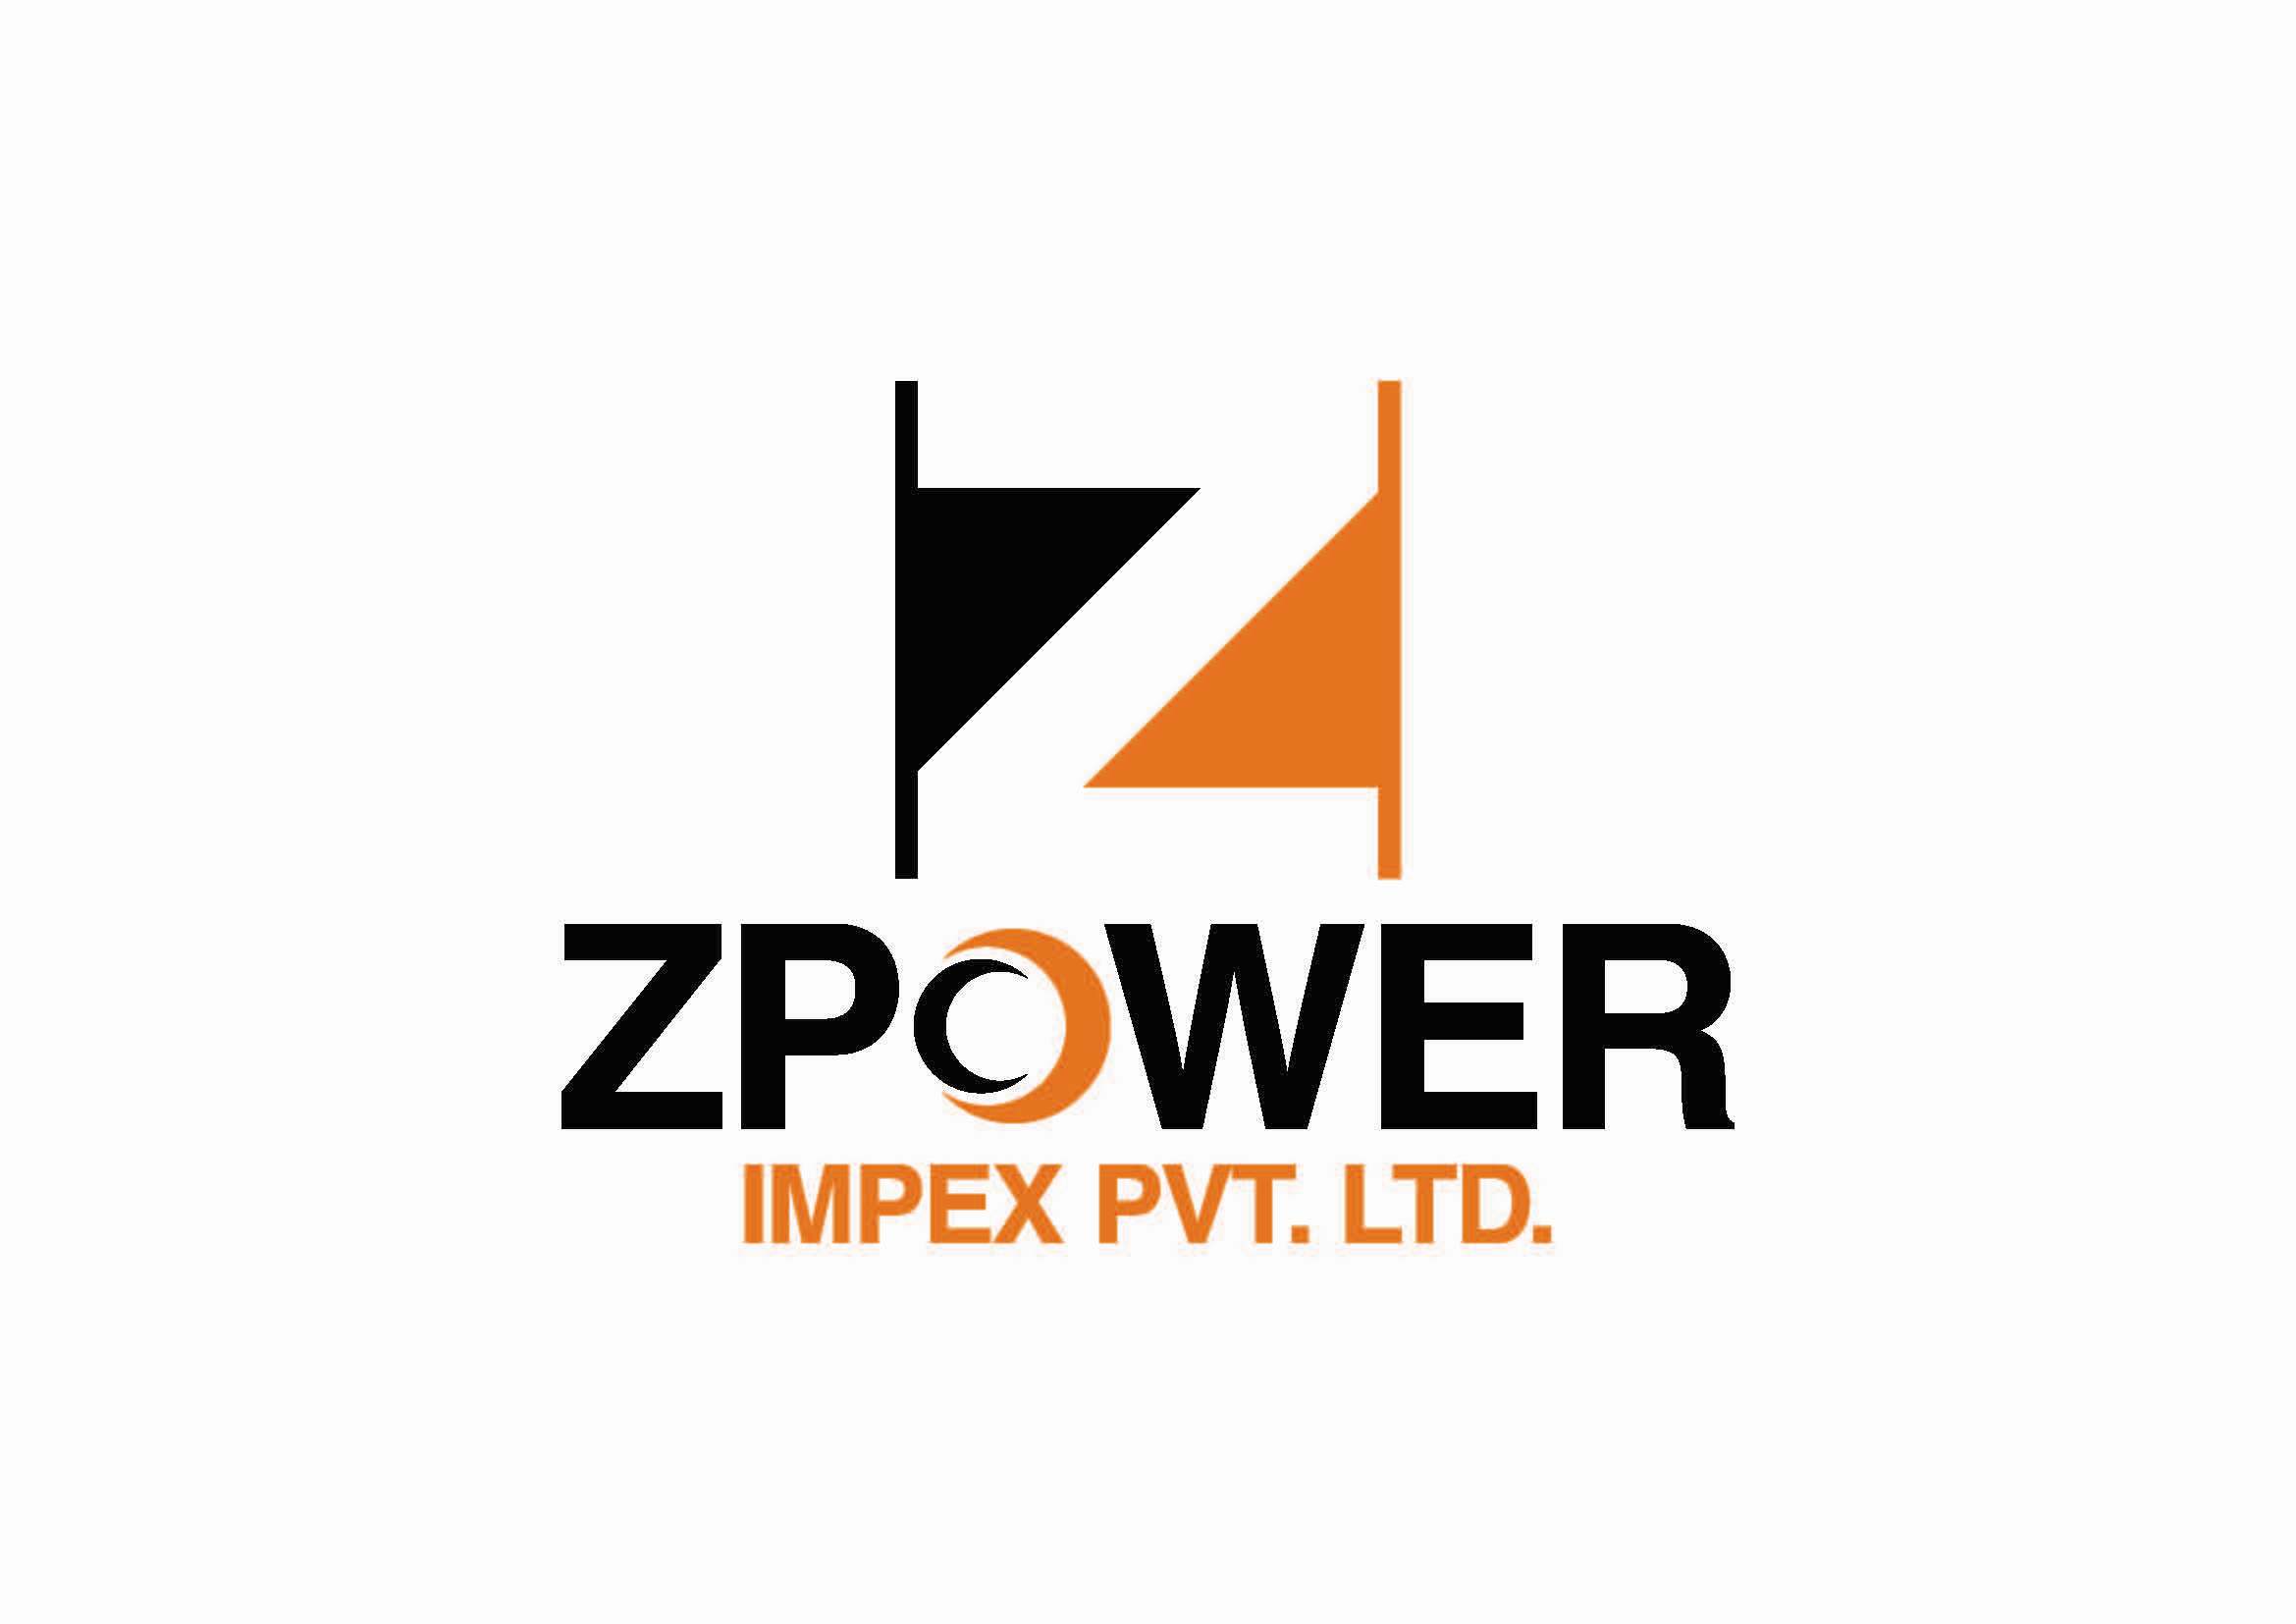 Zpower Impex Pvt. Ltd.